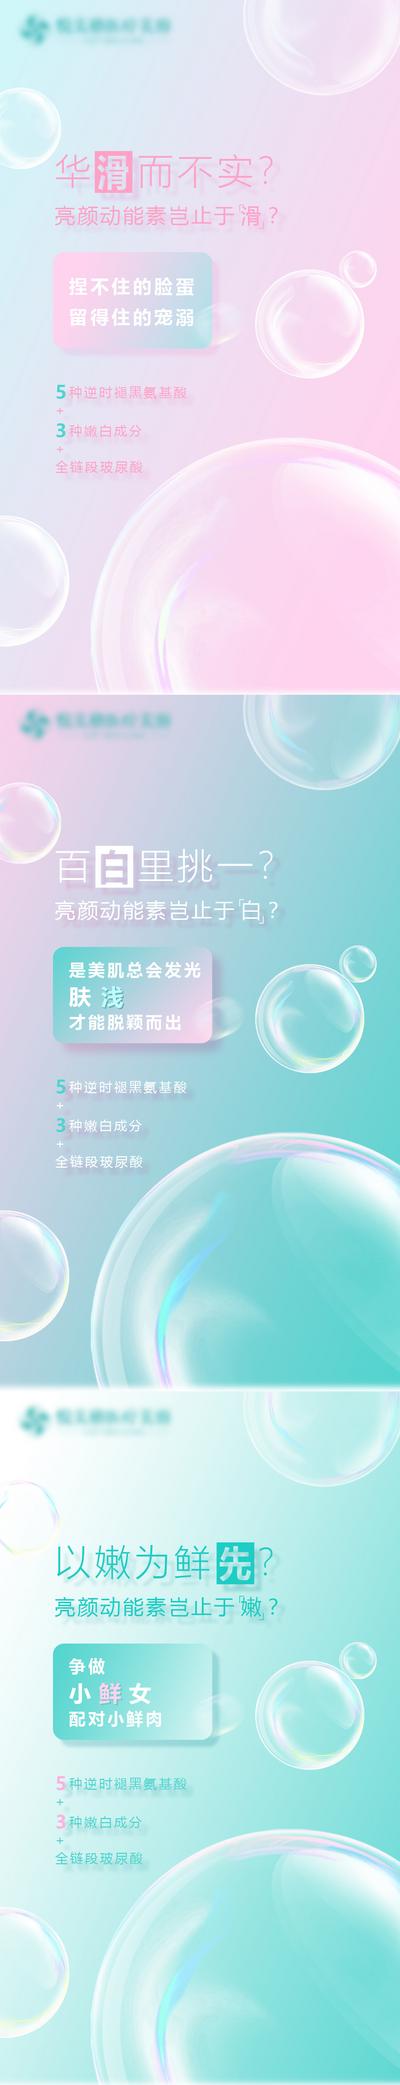 南门网 海报 医美 整形 美容 促销 宣传 气泡 炫彩 